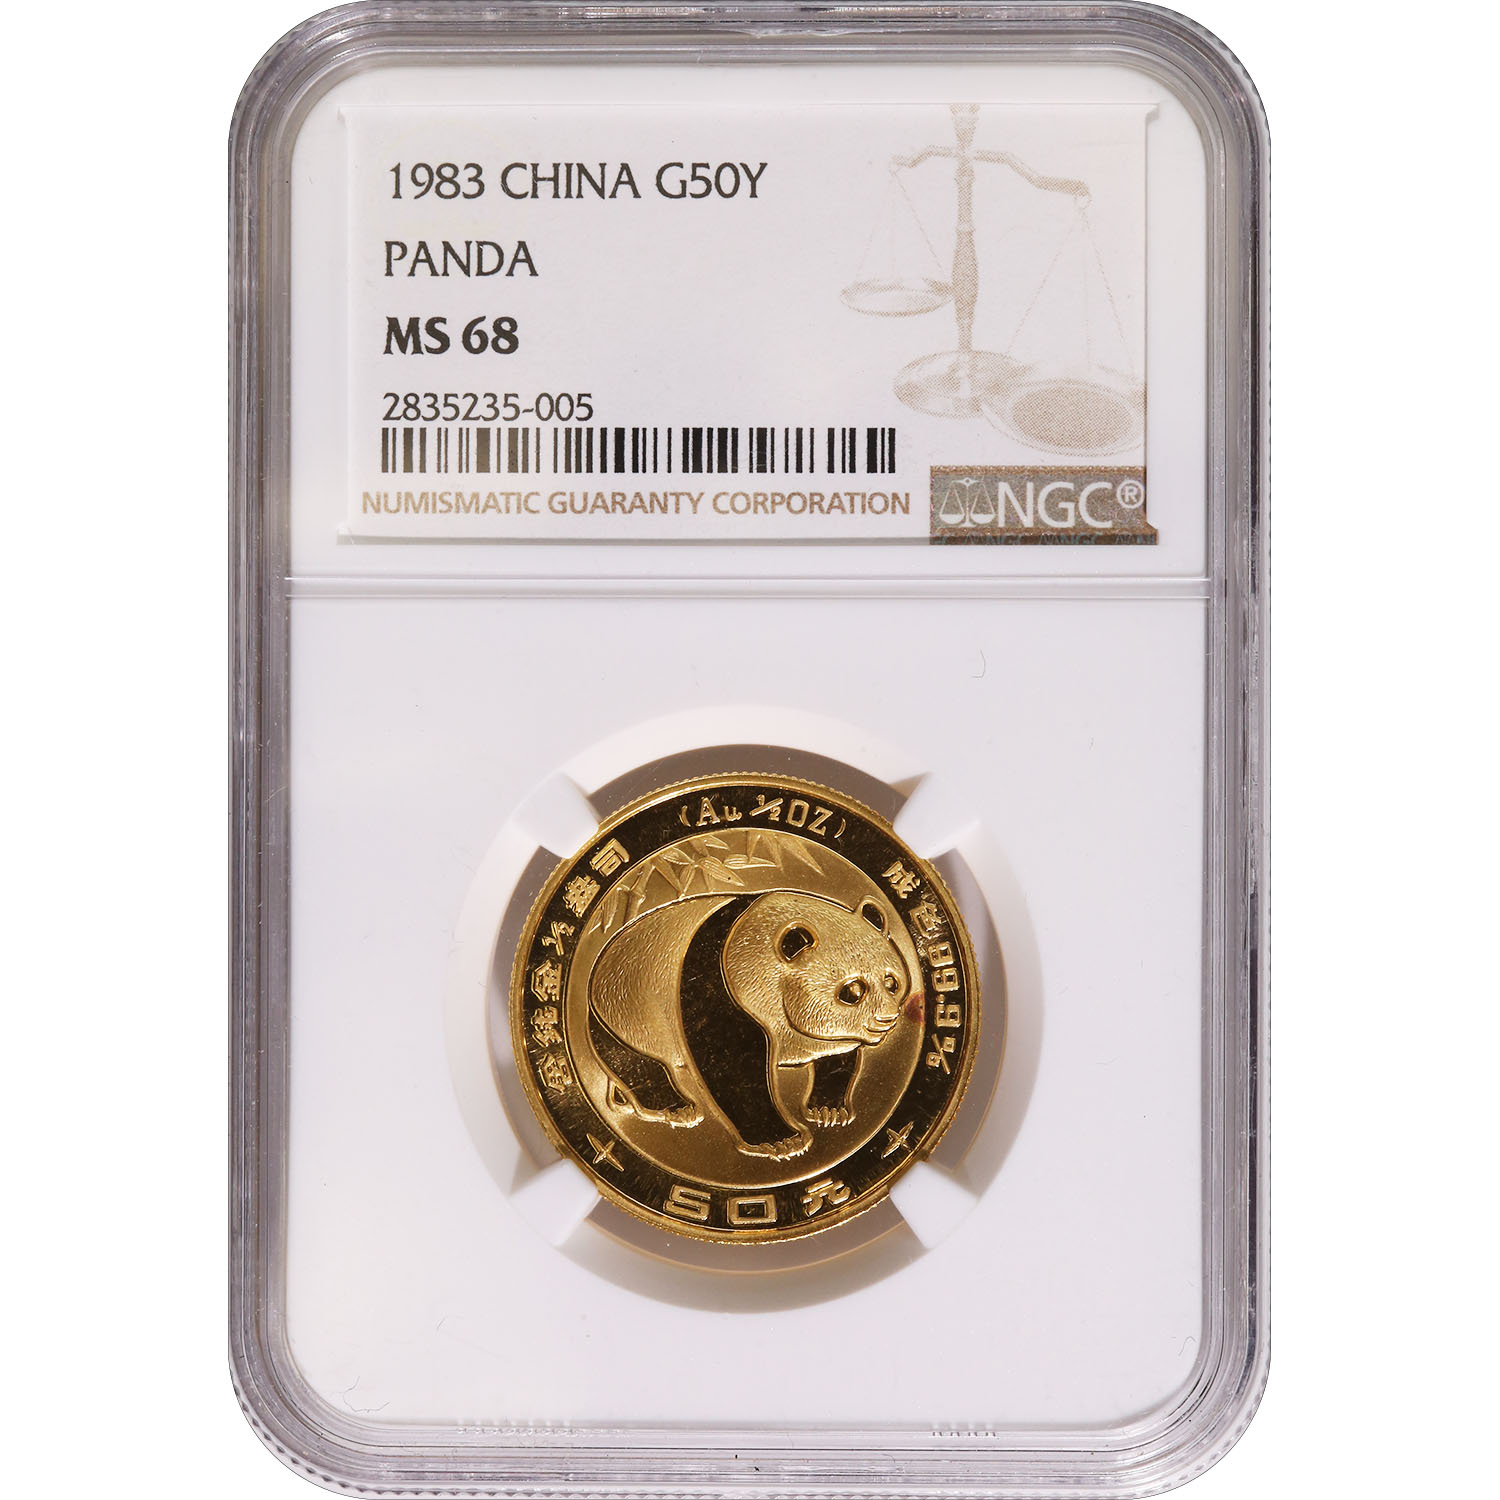 Certified Half Ounce Chinese Gold Panda 1983 50 Yuan MS68 NGC